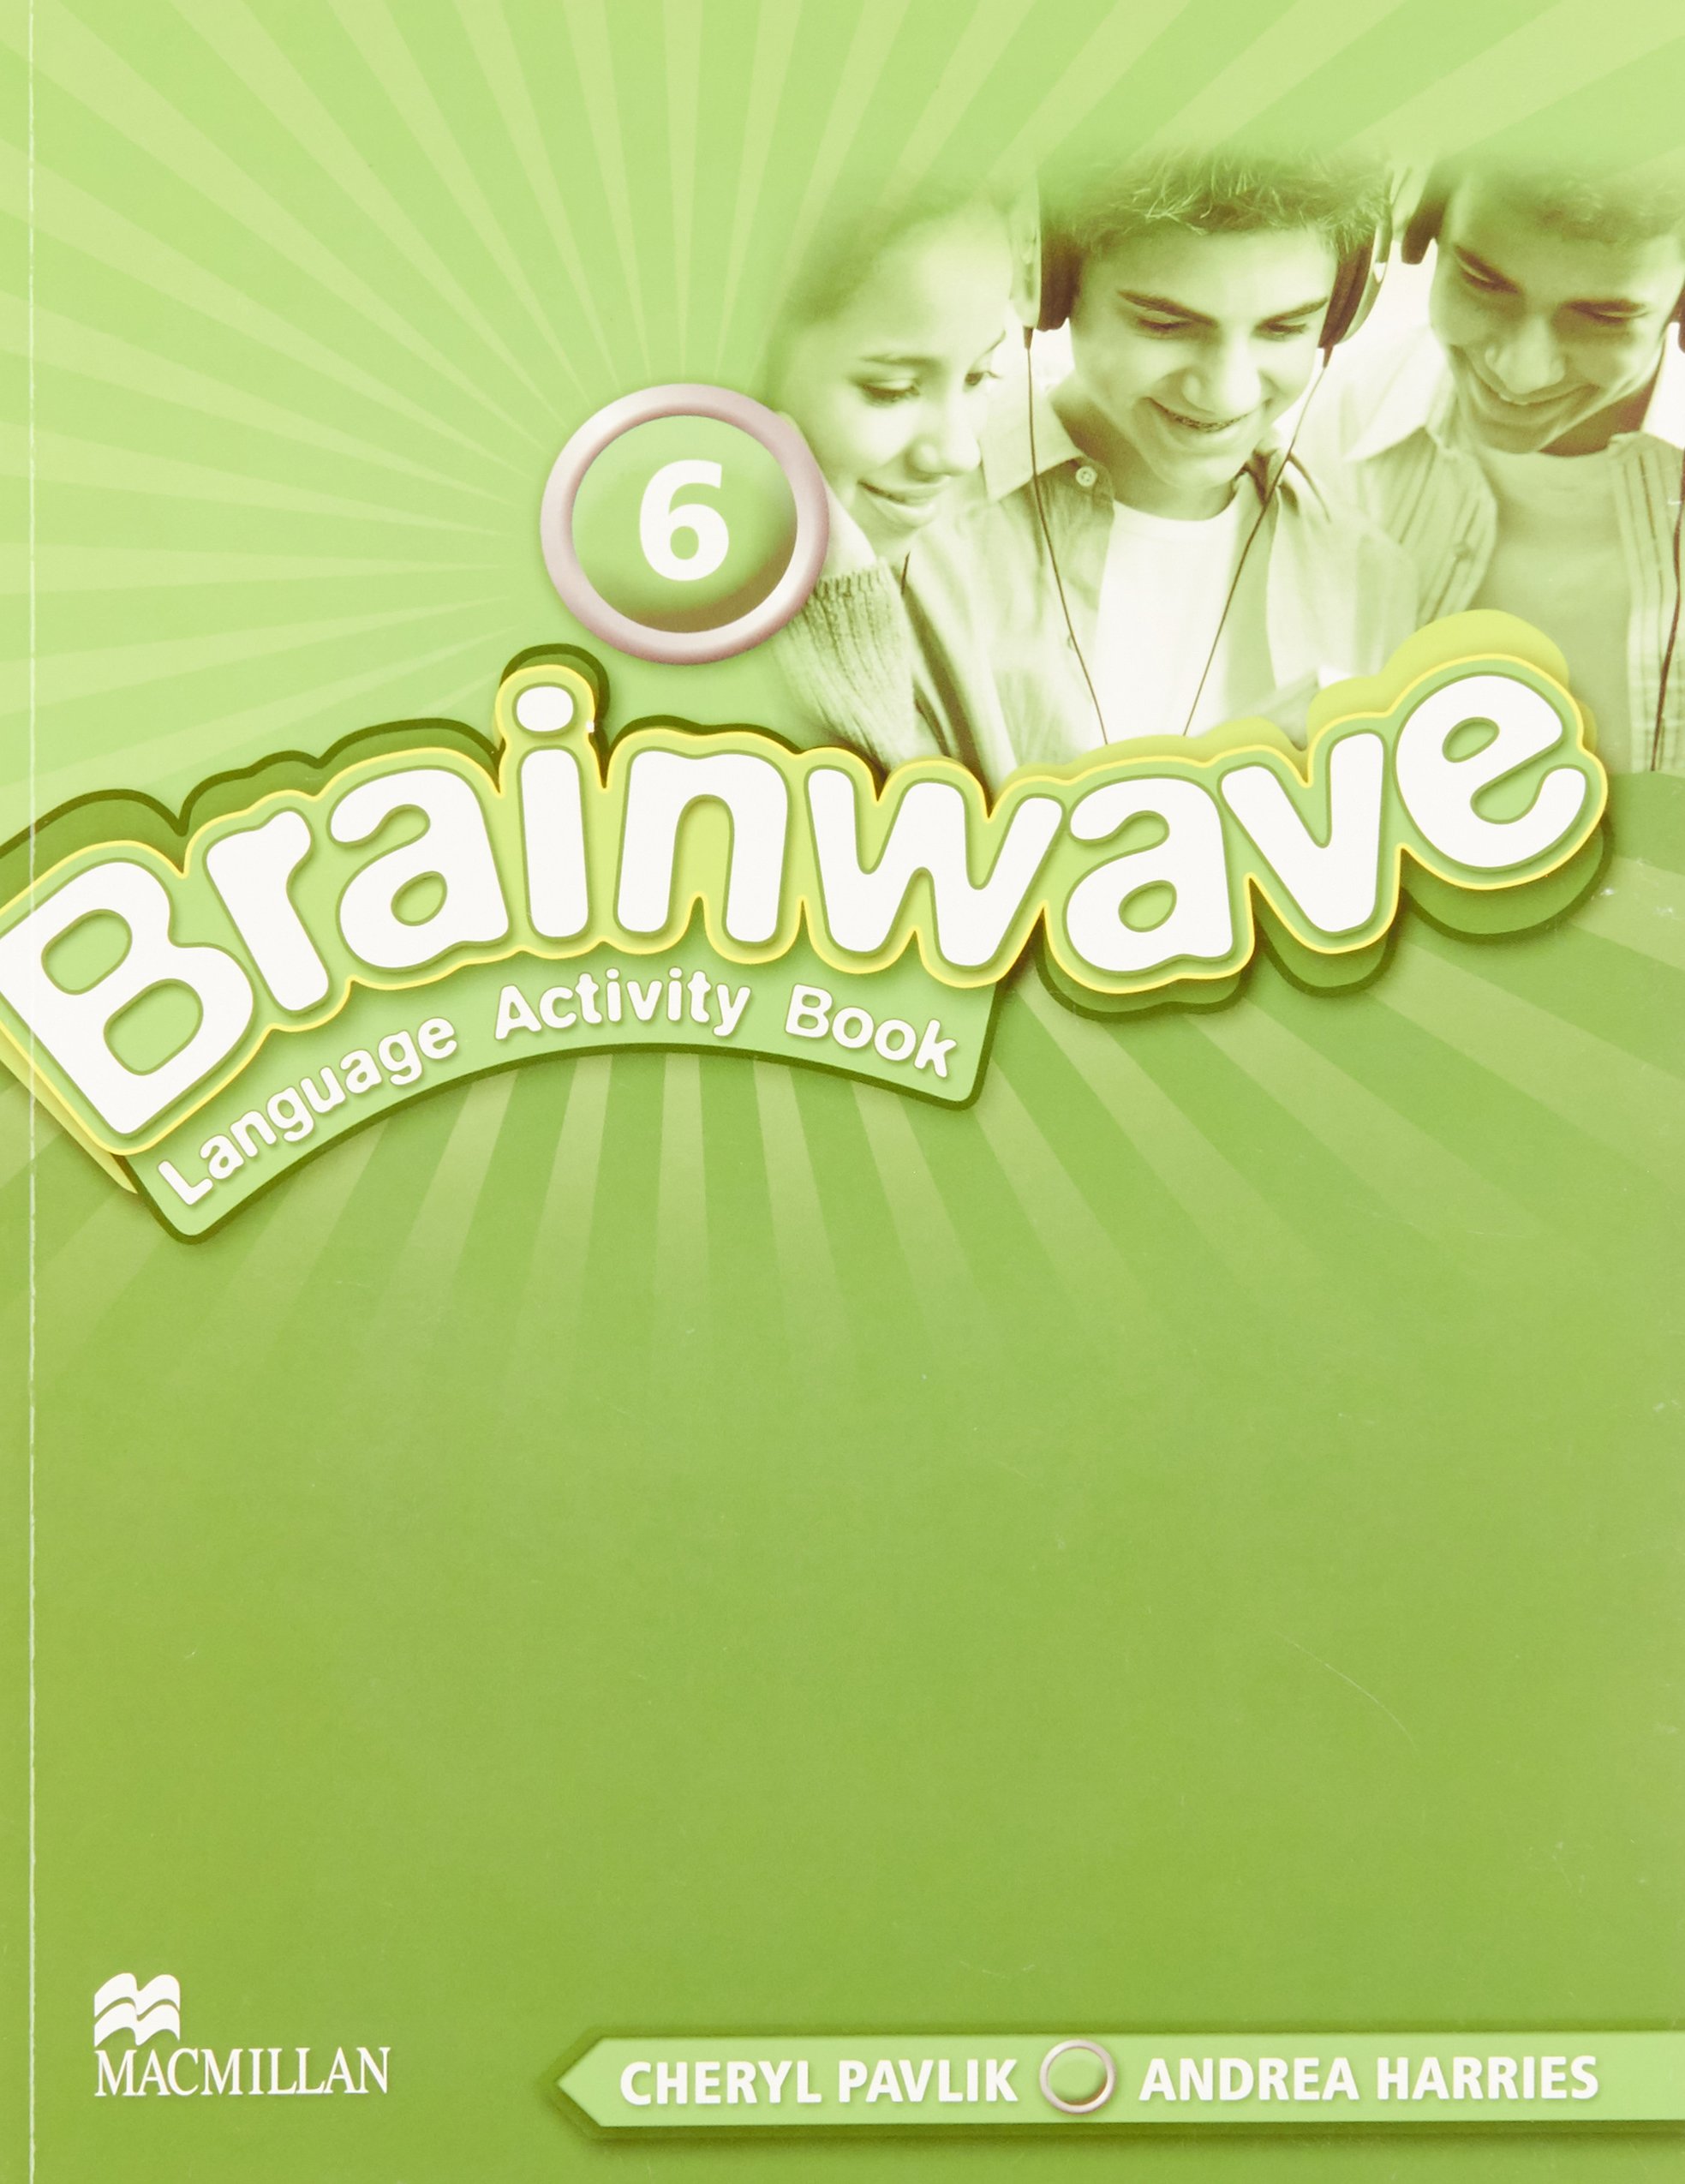 Brainwave 6 